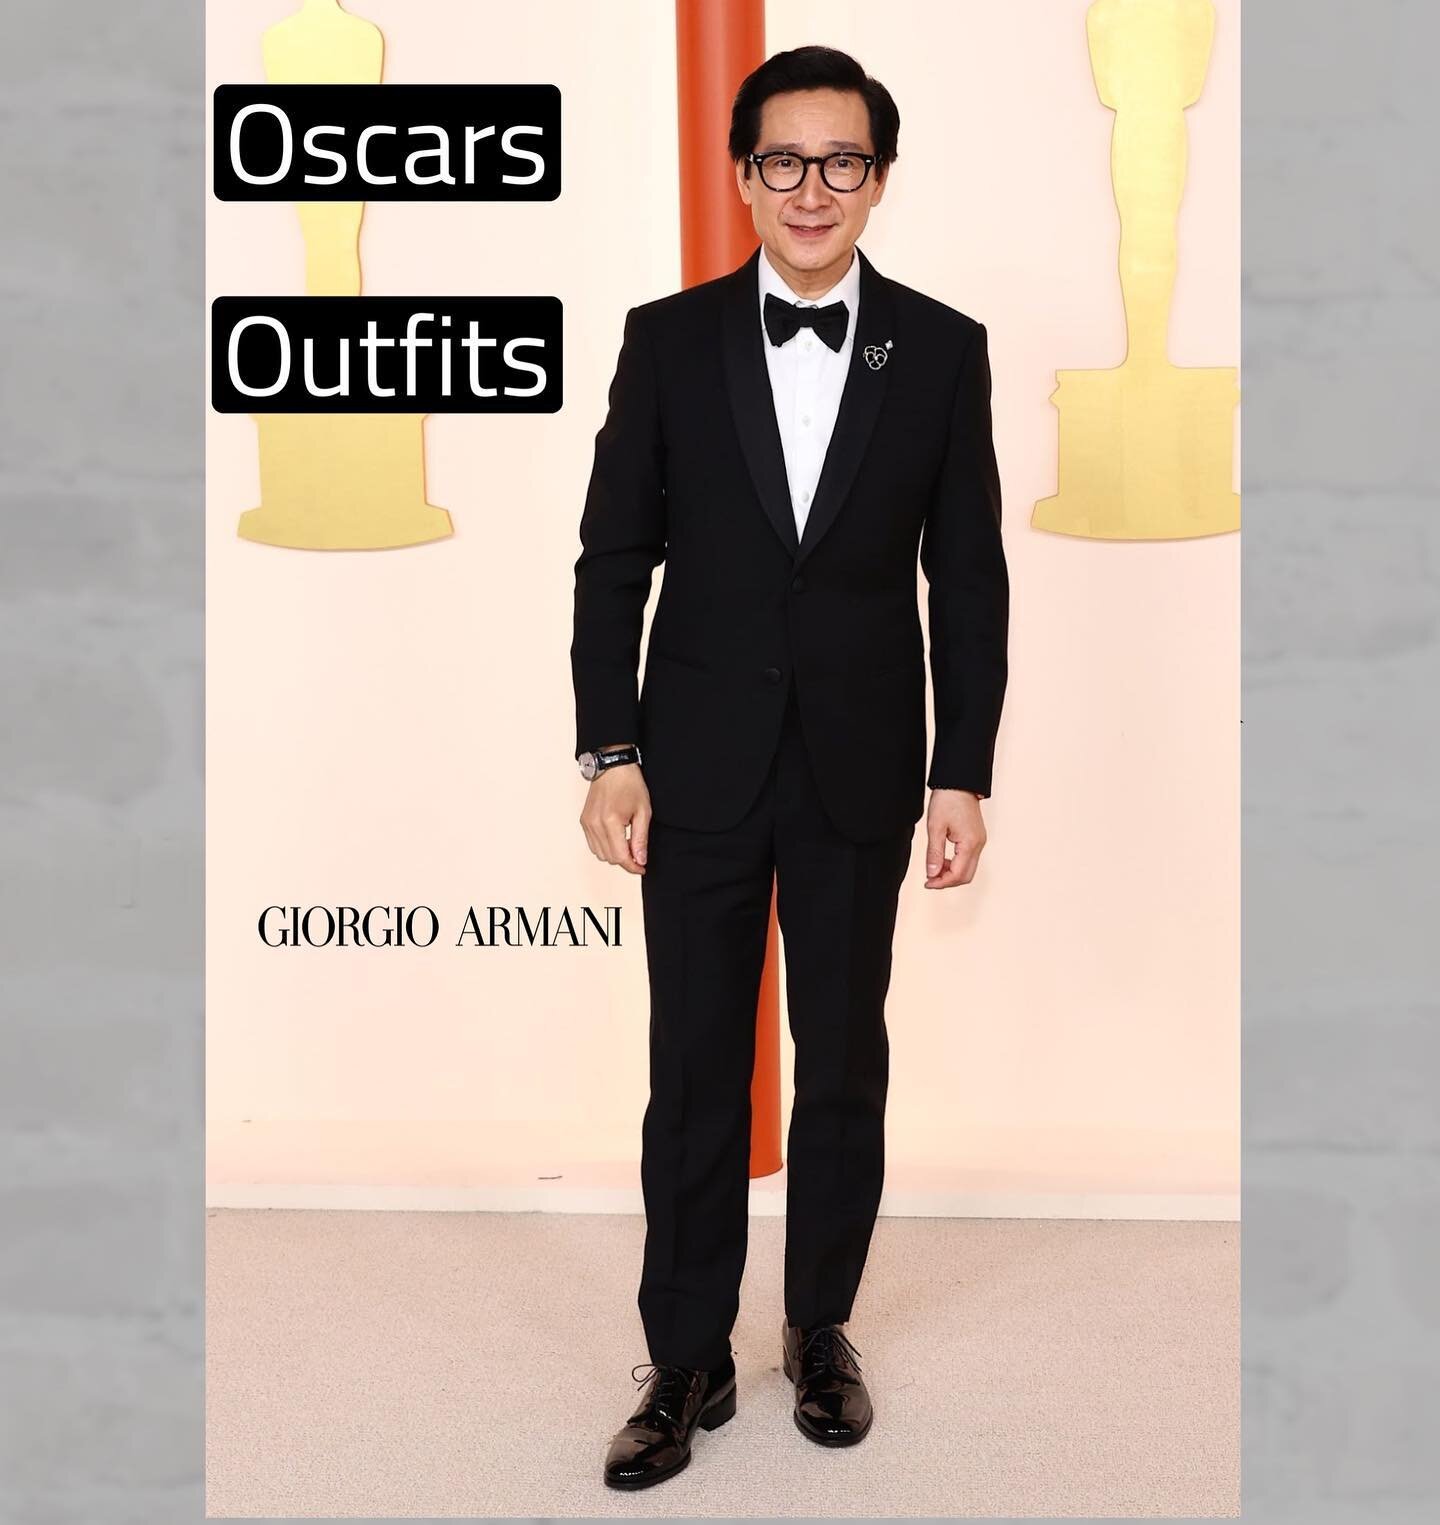 Oscars outfits